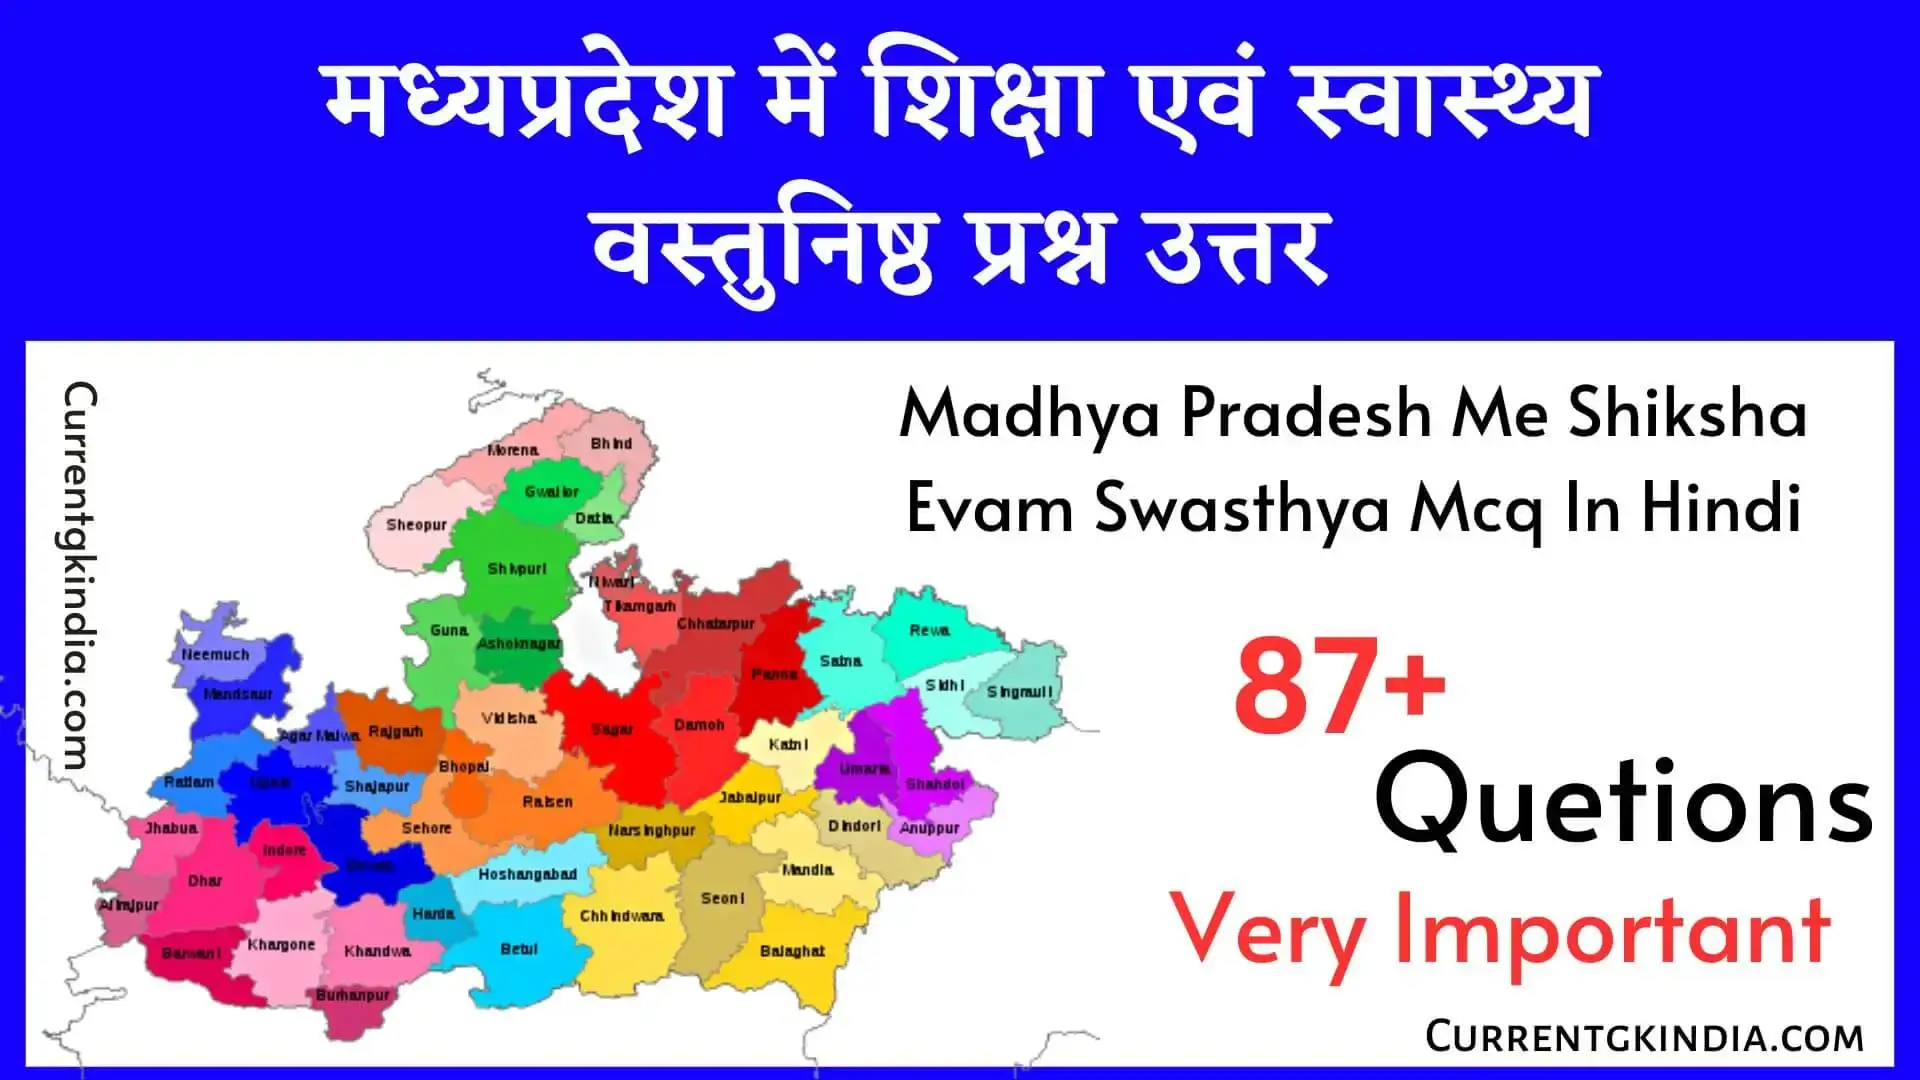 मध्यप्रदेश में शिक्षा एवं स्वास्थ्य वस्तुनिष्ठ प्रश्न उत्तर Madhya Pradesh Me Shiksha Evam Swasthya Mcq In Hindi मप्र में शिक्षा एवं स्वास्थ्य वस्तुनिष्ठ प्रश्न उत्तर Mp Me Shiksha Evam Swasthya Mcq In Hindi